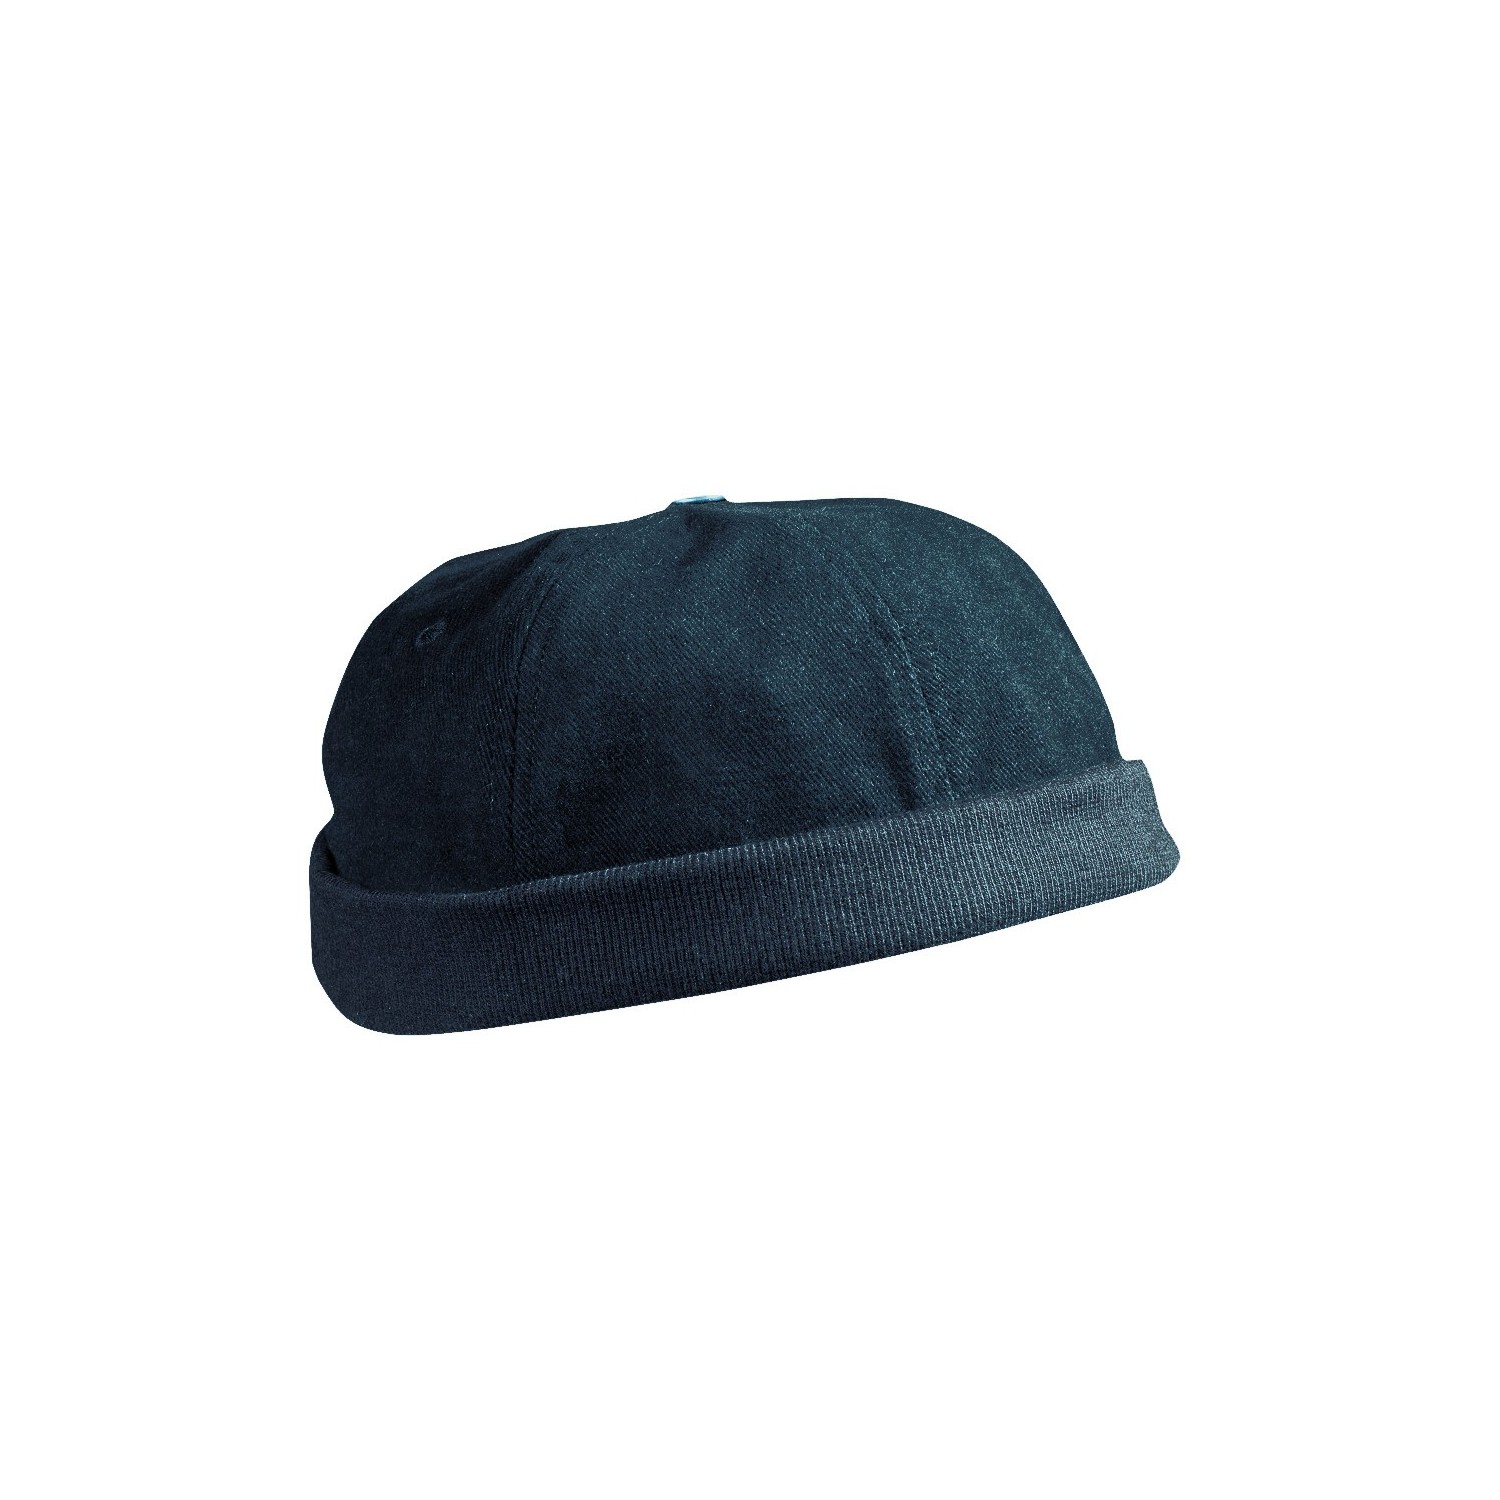 Le bonnet miki pur coton, Le 31, Chapeaux pour Homme